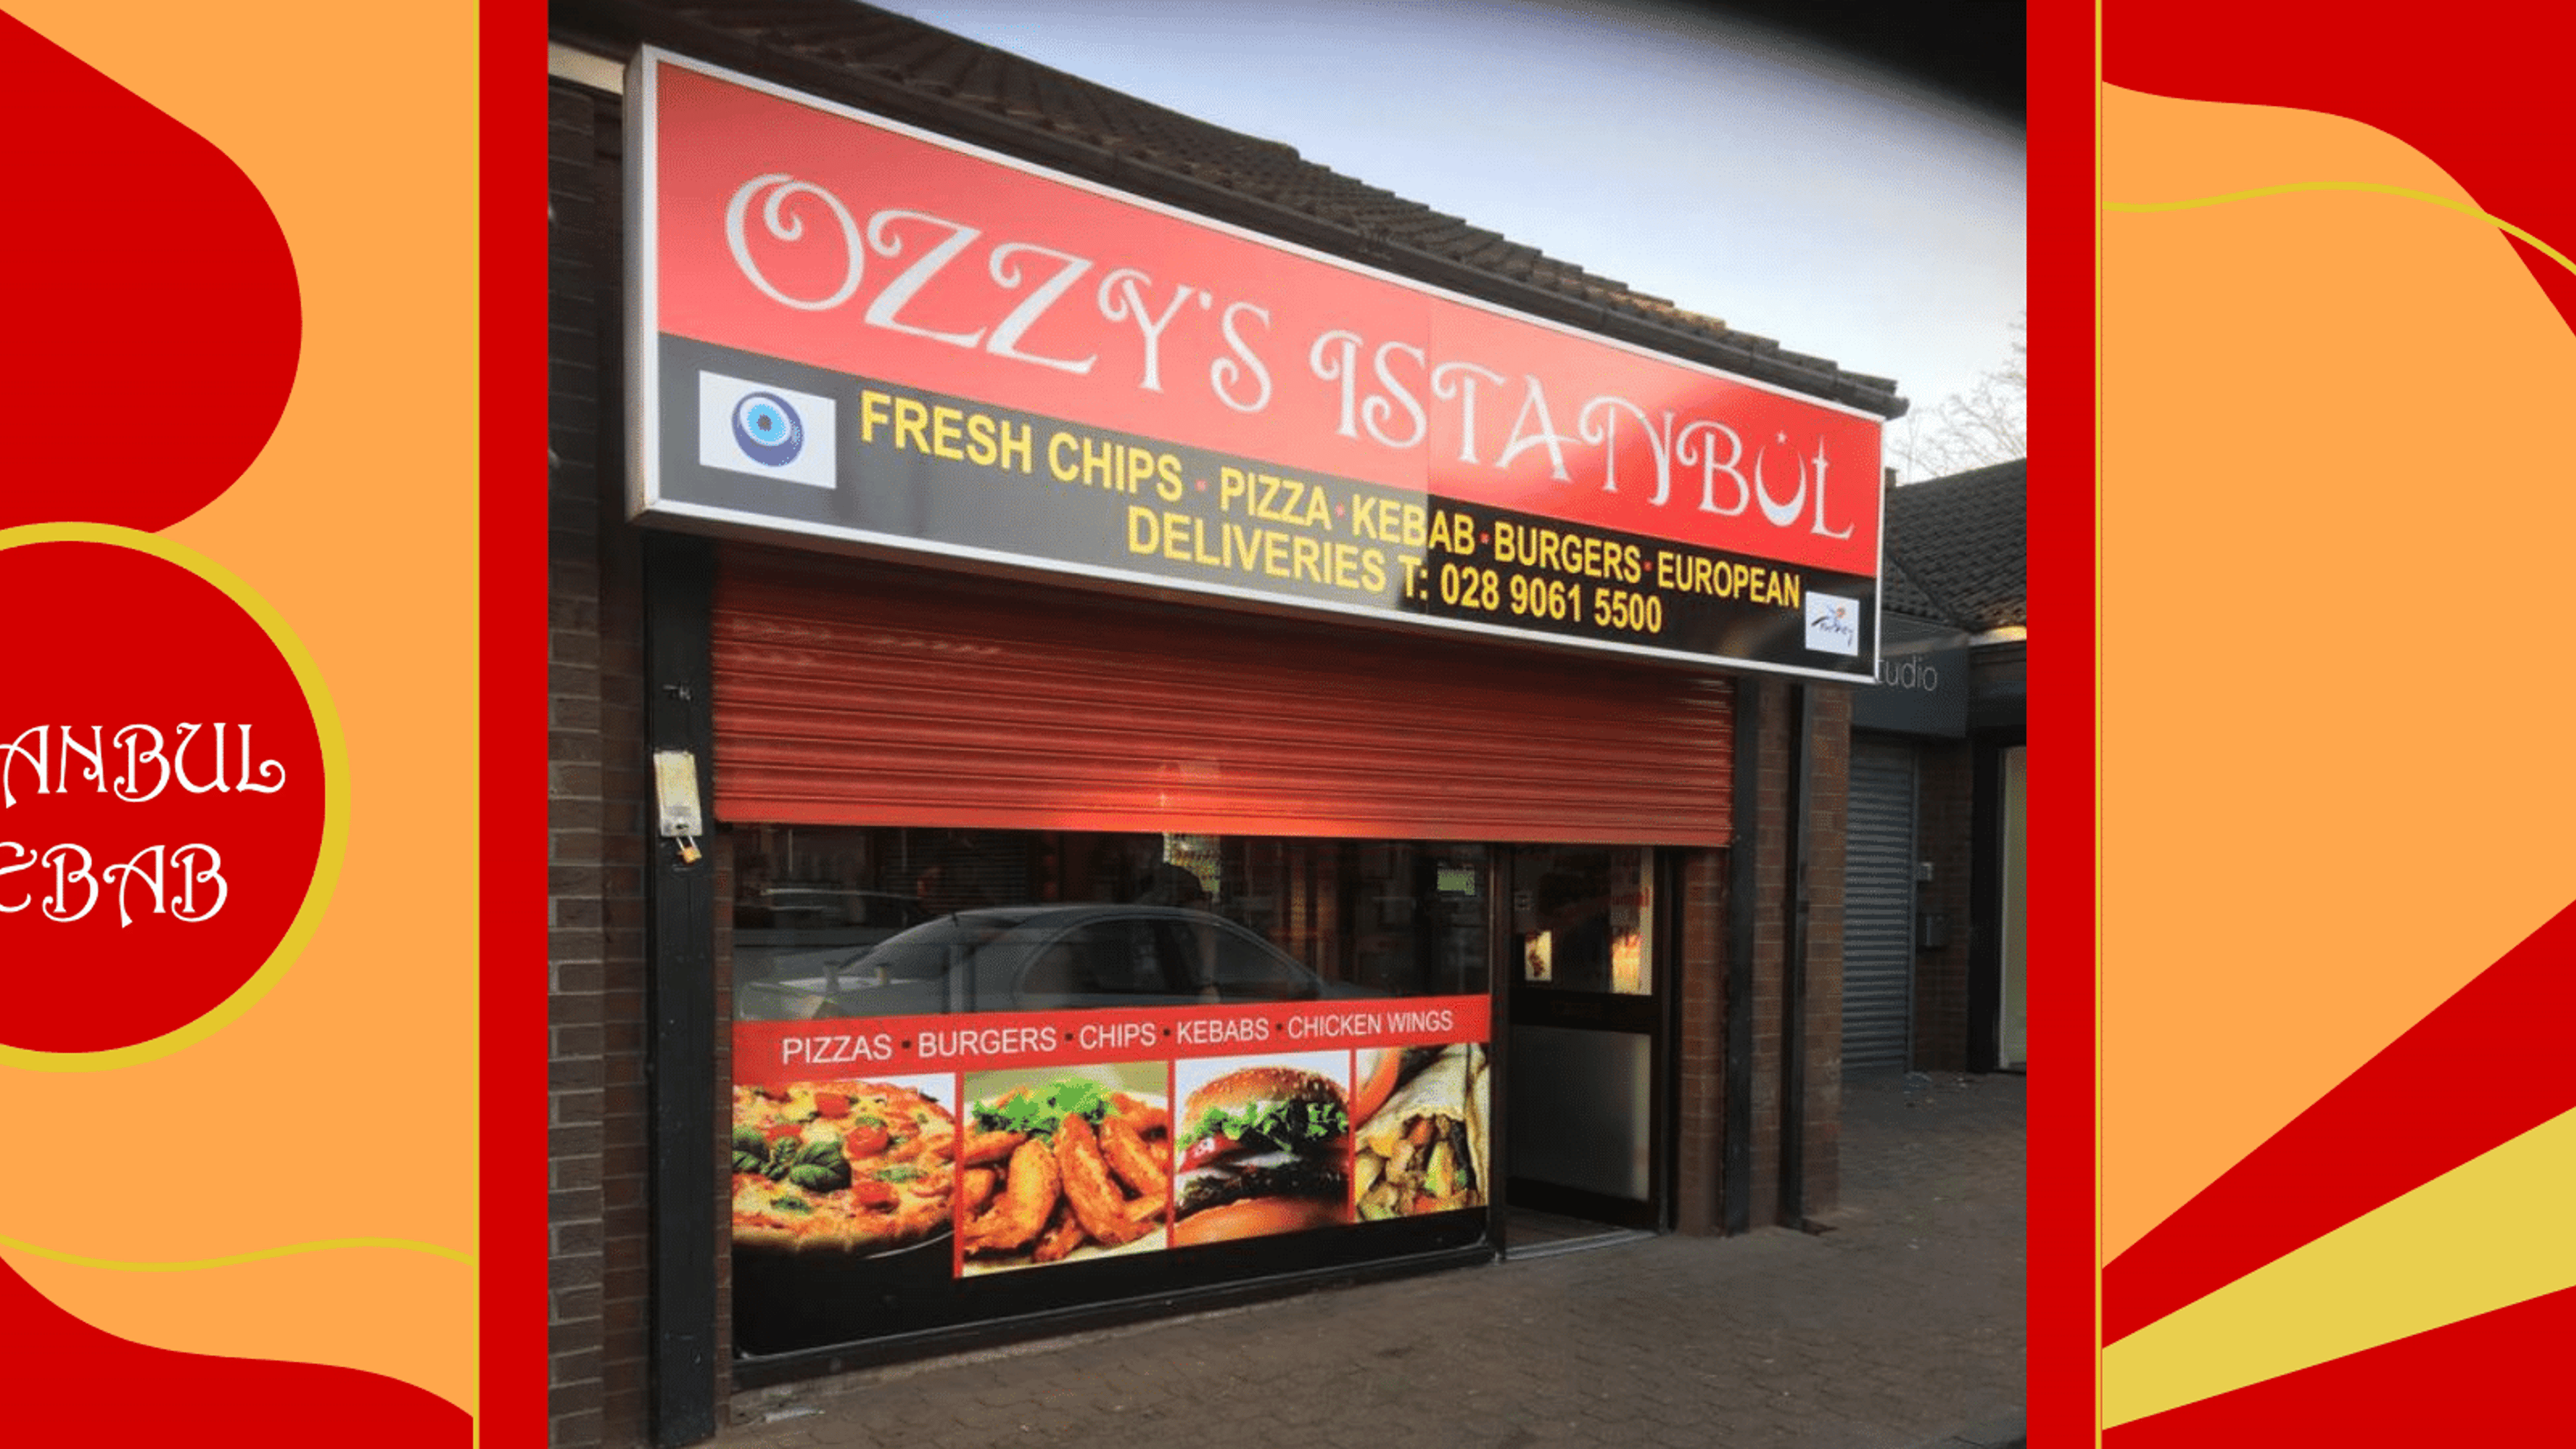 Ozzys Istanbul Belfast